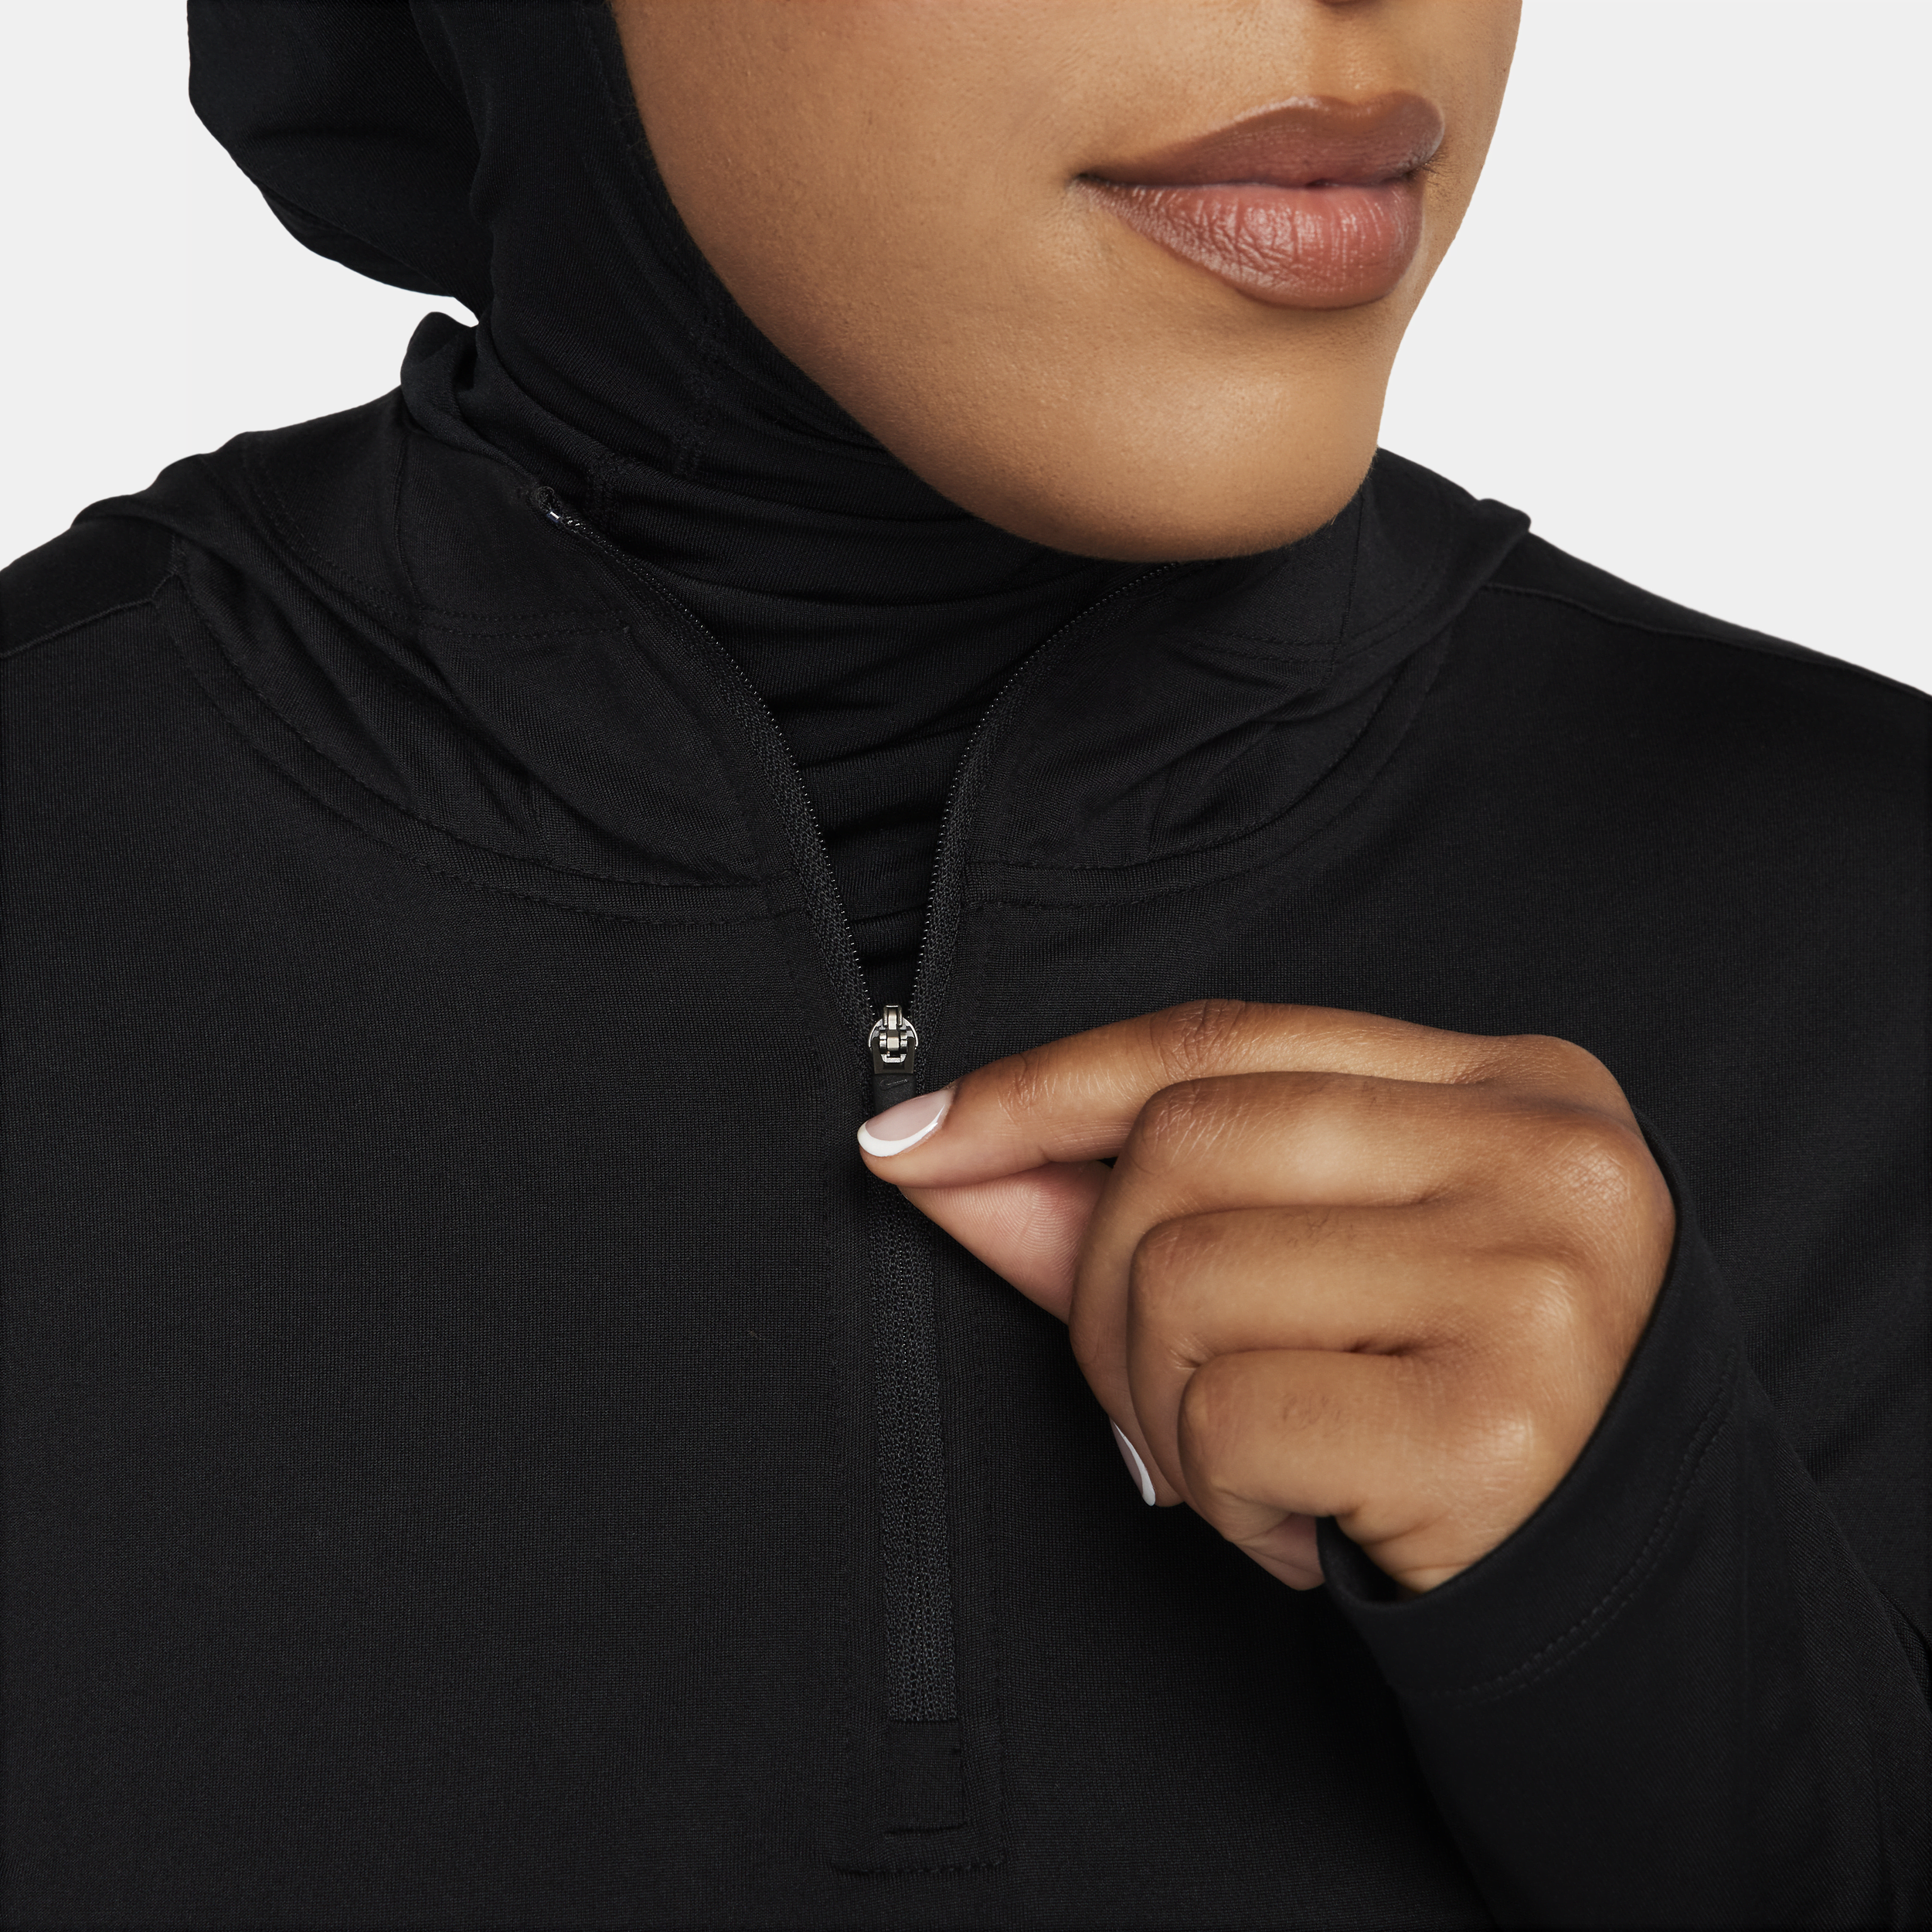 Nike Dri-FIT Swift Element UV hardloopjack met capuchon voor dames Zwart